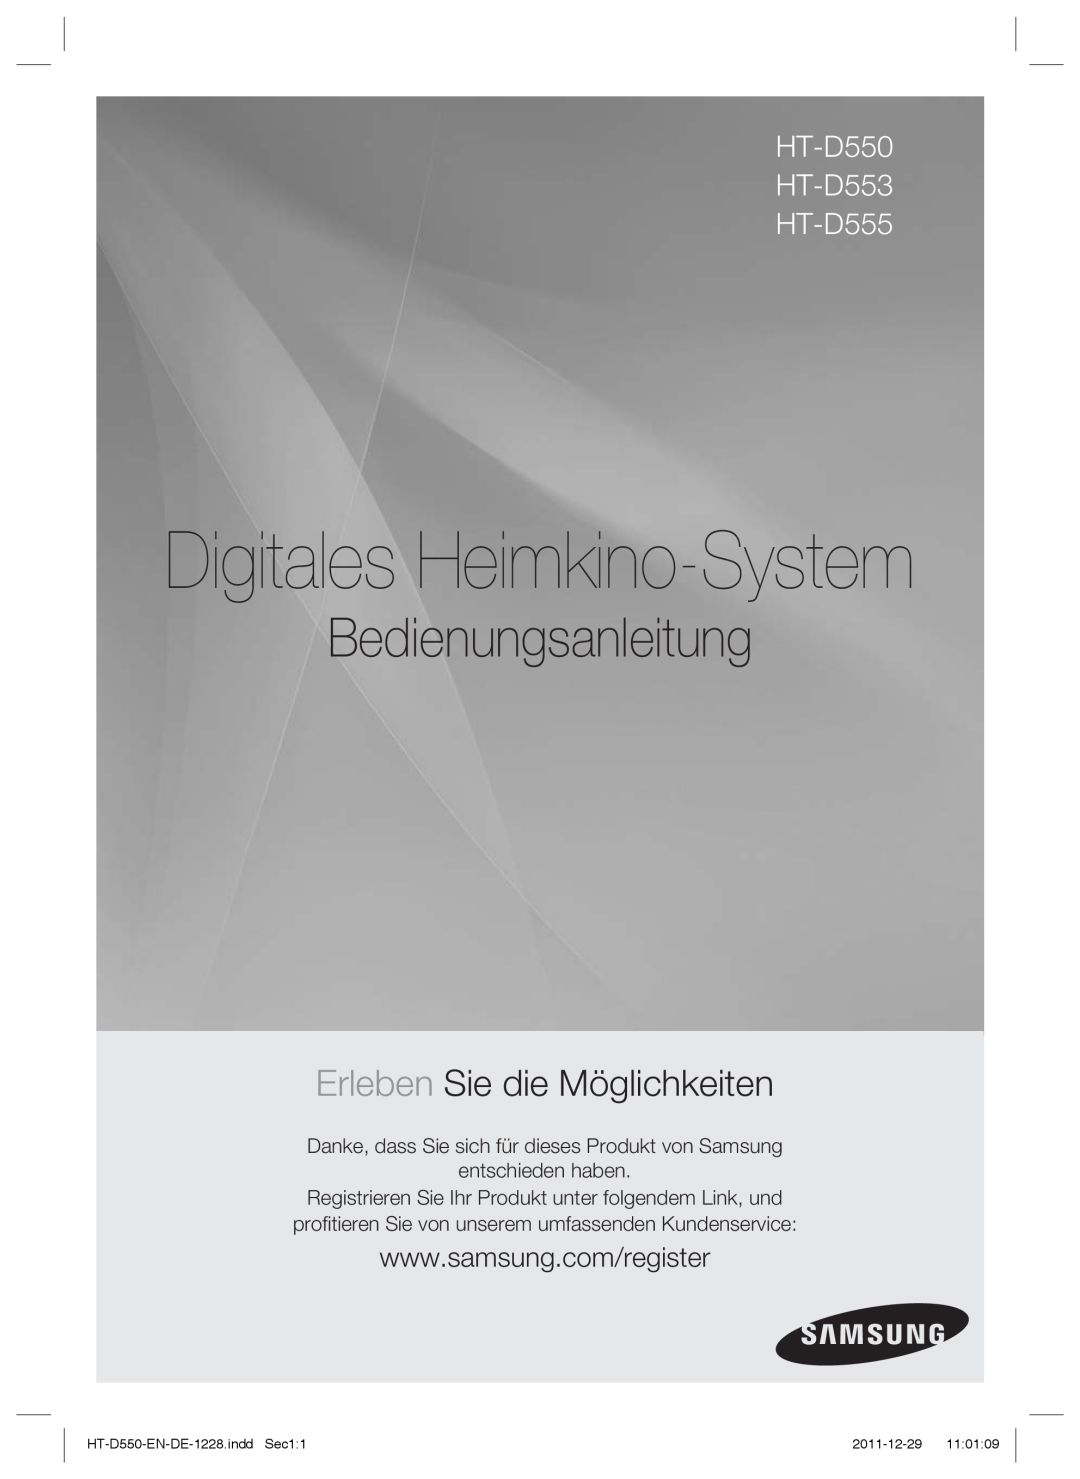 Samsung HT-D555WK/SQ, HT-D550/XN Bedienungsanleitung, Erleben Sie die Möglichkeiten, Digitales Heimkino-System, 2011-12-29 